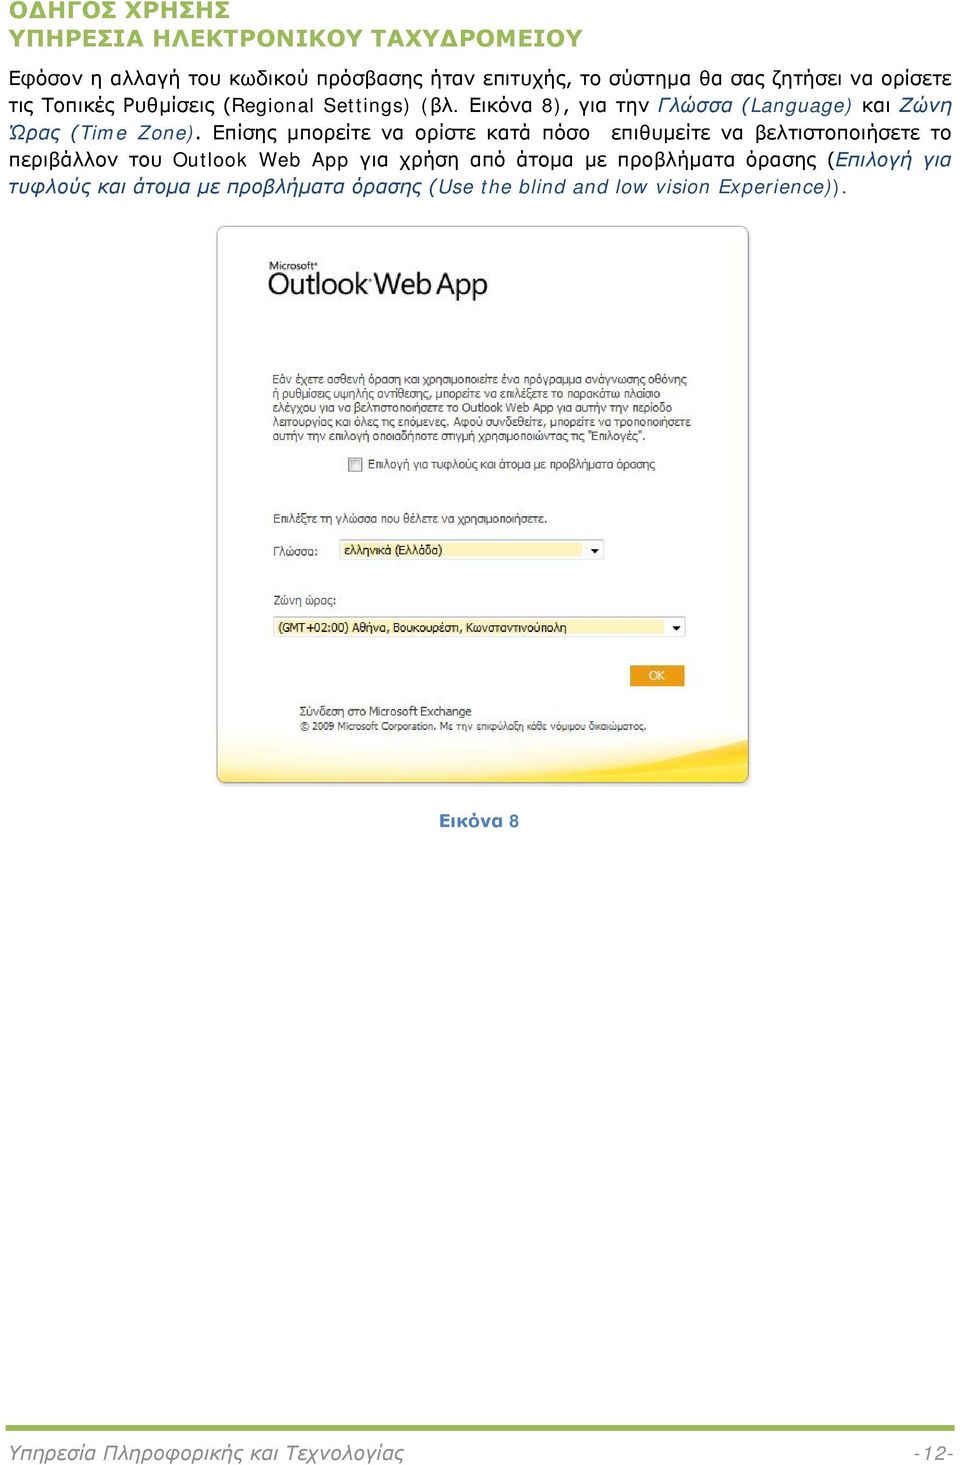 Επίσης μπορείτε να ορίστε κατά πόσο επιθυμείτε να βελτιστοποιήσετε το περιβάλλον του Outlook Web App για χρήση από άτομα